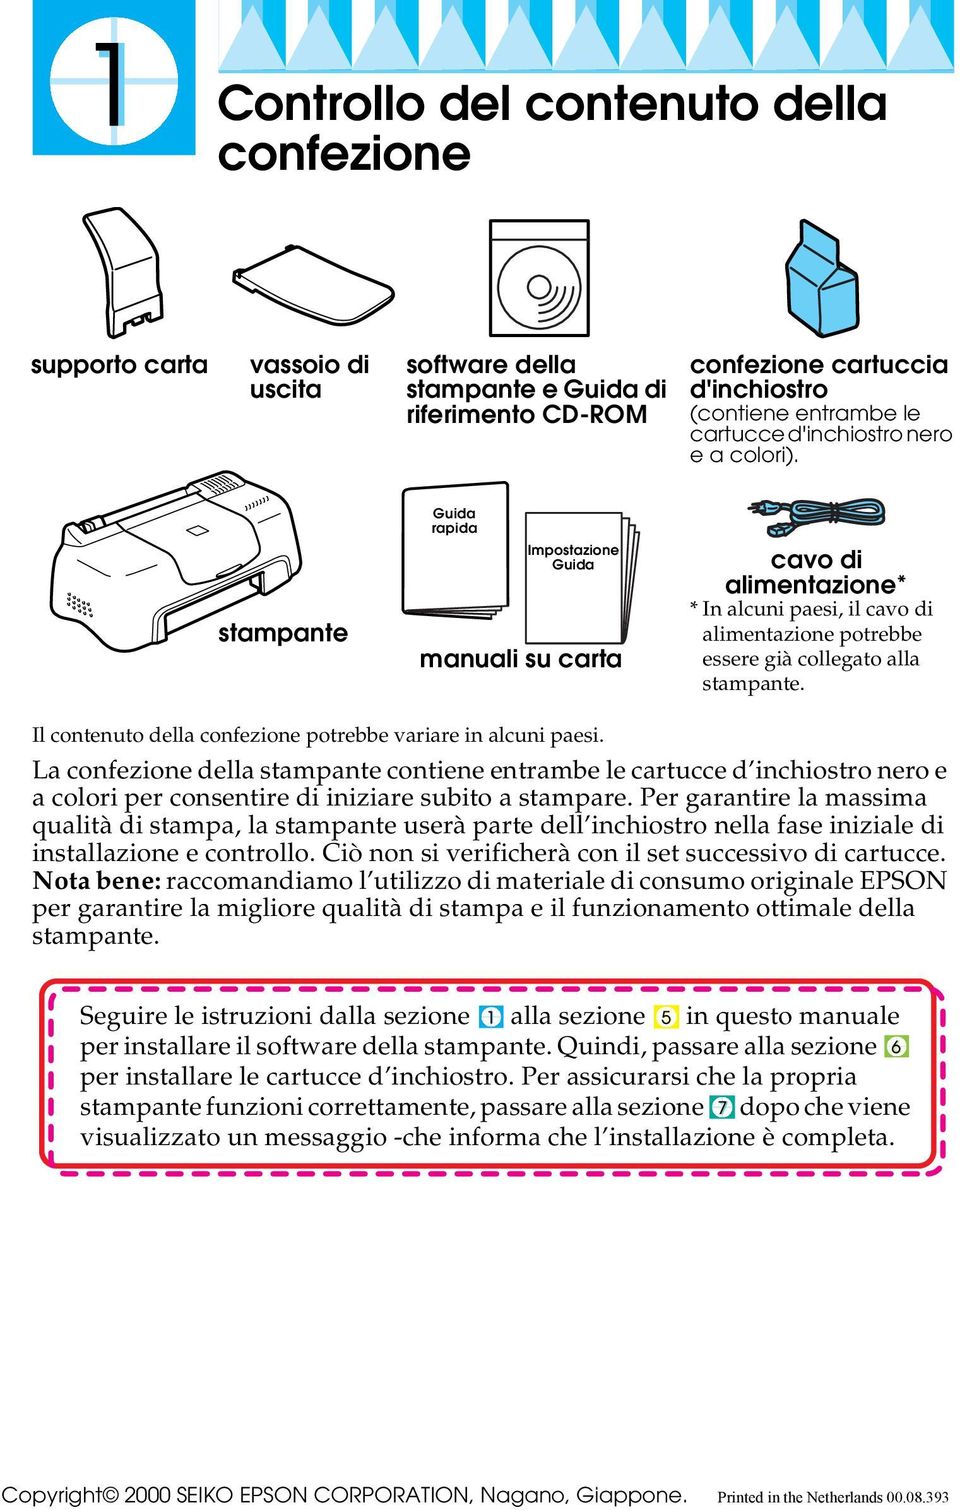 Guida rapida stampante Impostazione Guida manuali su carta cavo di alimentazione* * In alcuni paesi, il cavo di alimentazione potrebbe essere già collegato alla stampante.